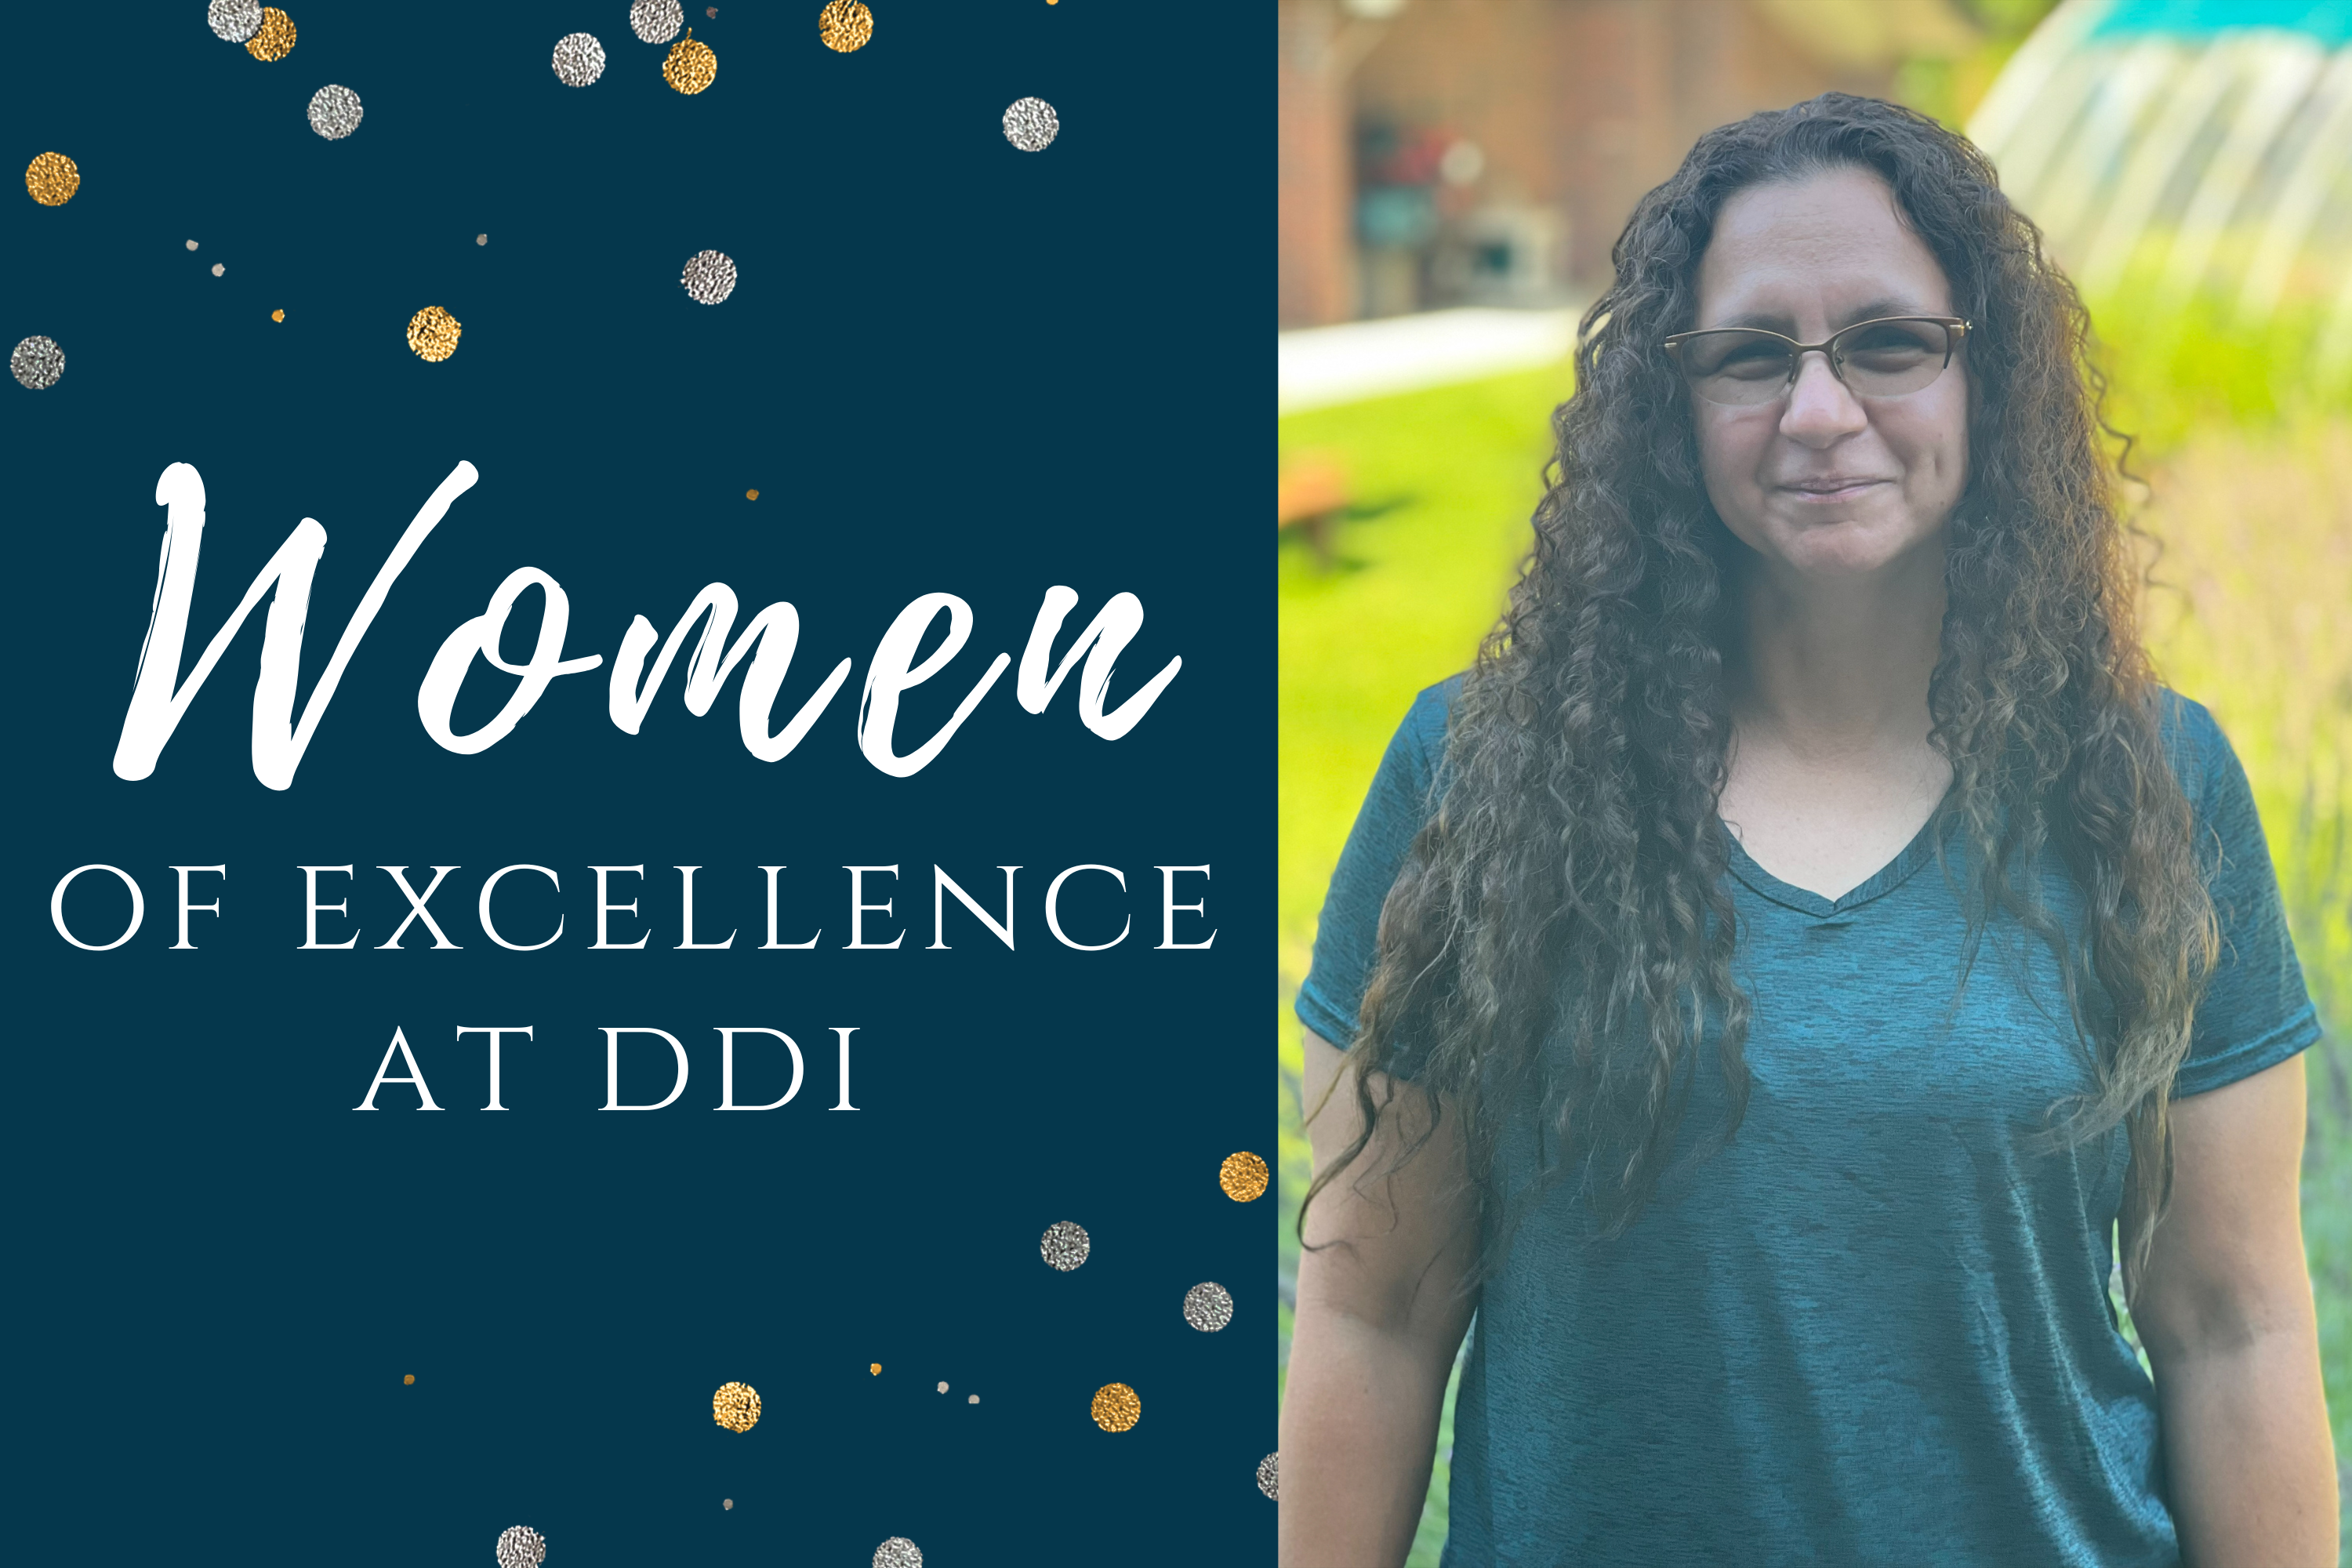 DDI's Women of Excellence: Rose Ellen Urdahl